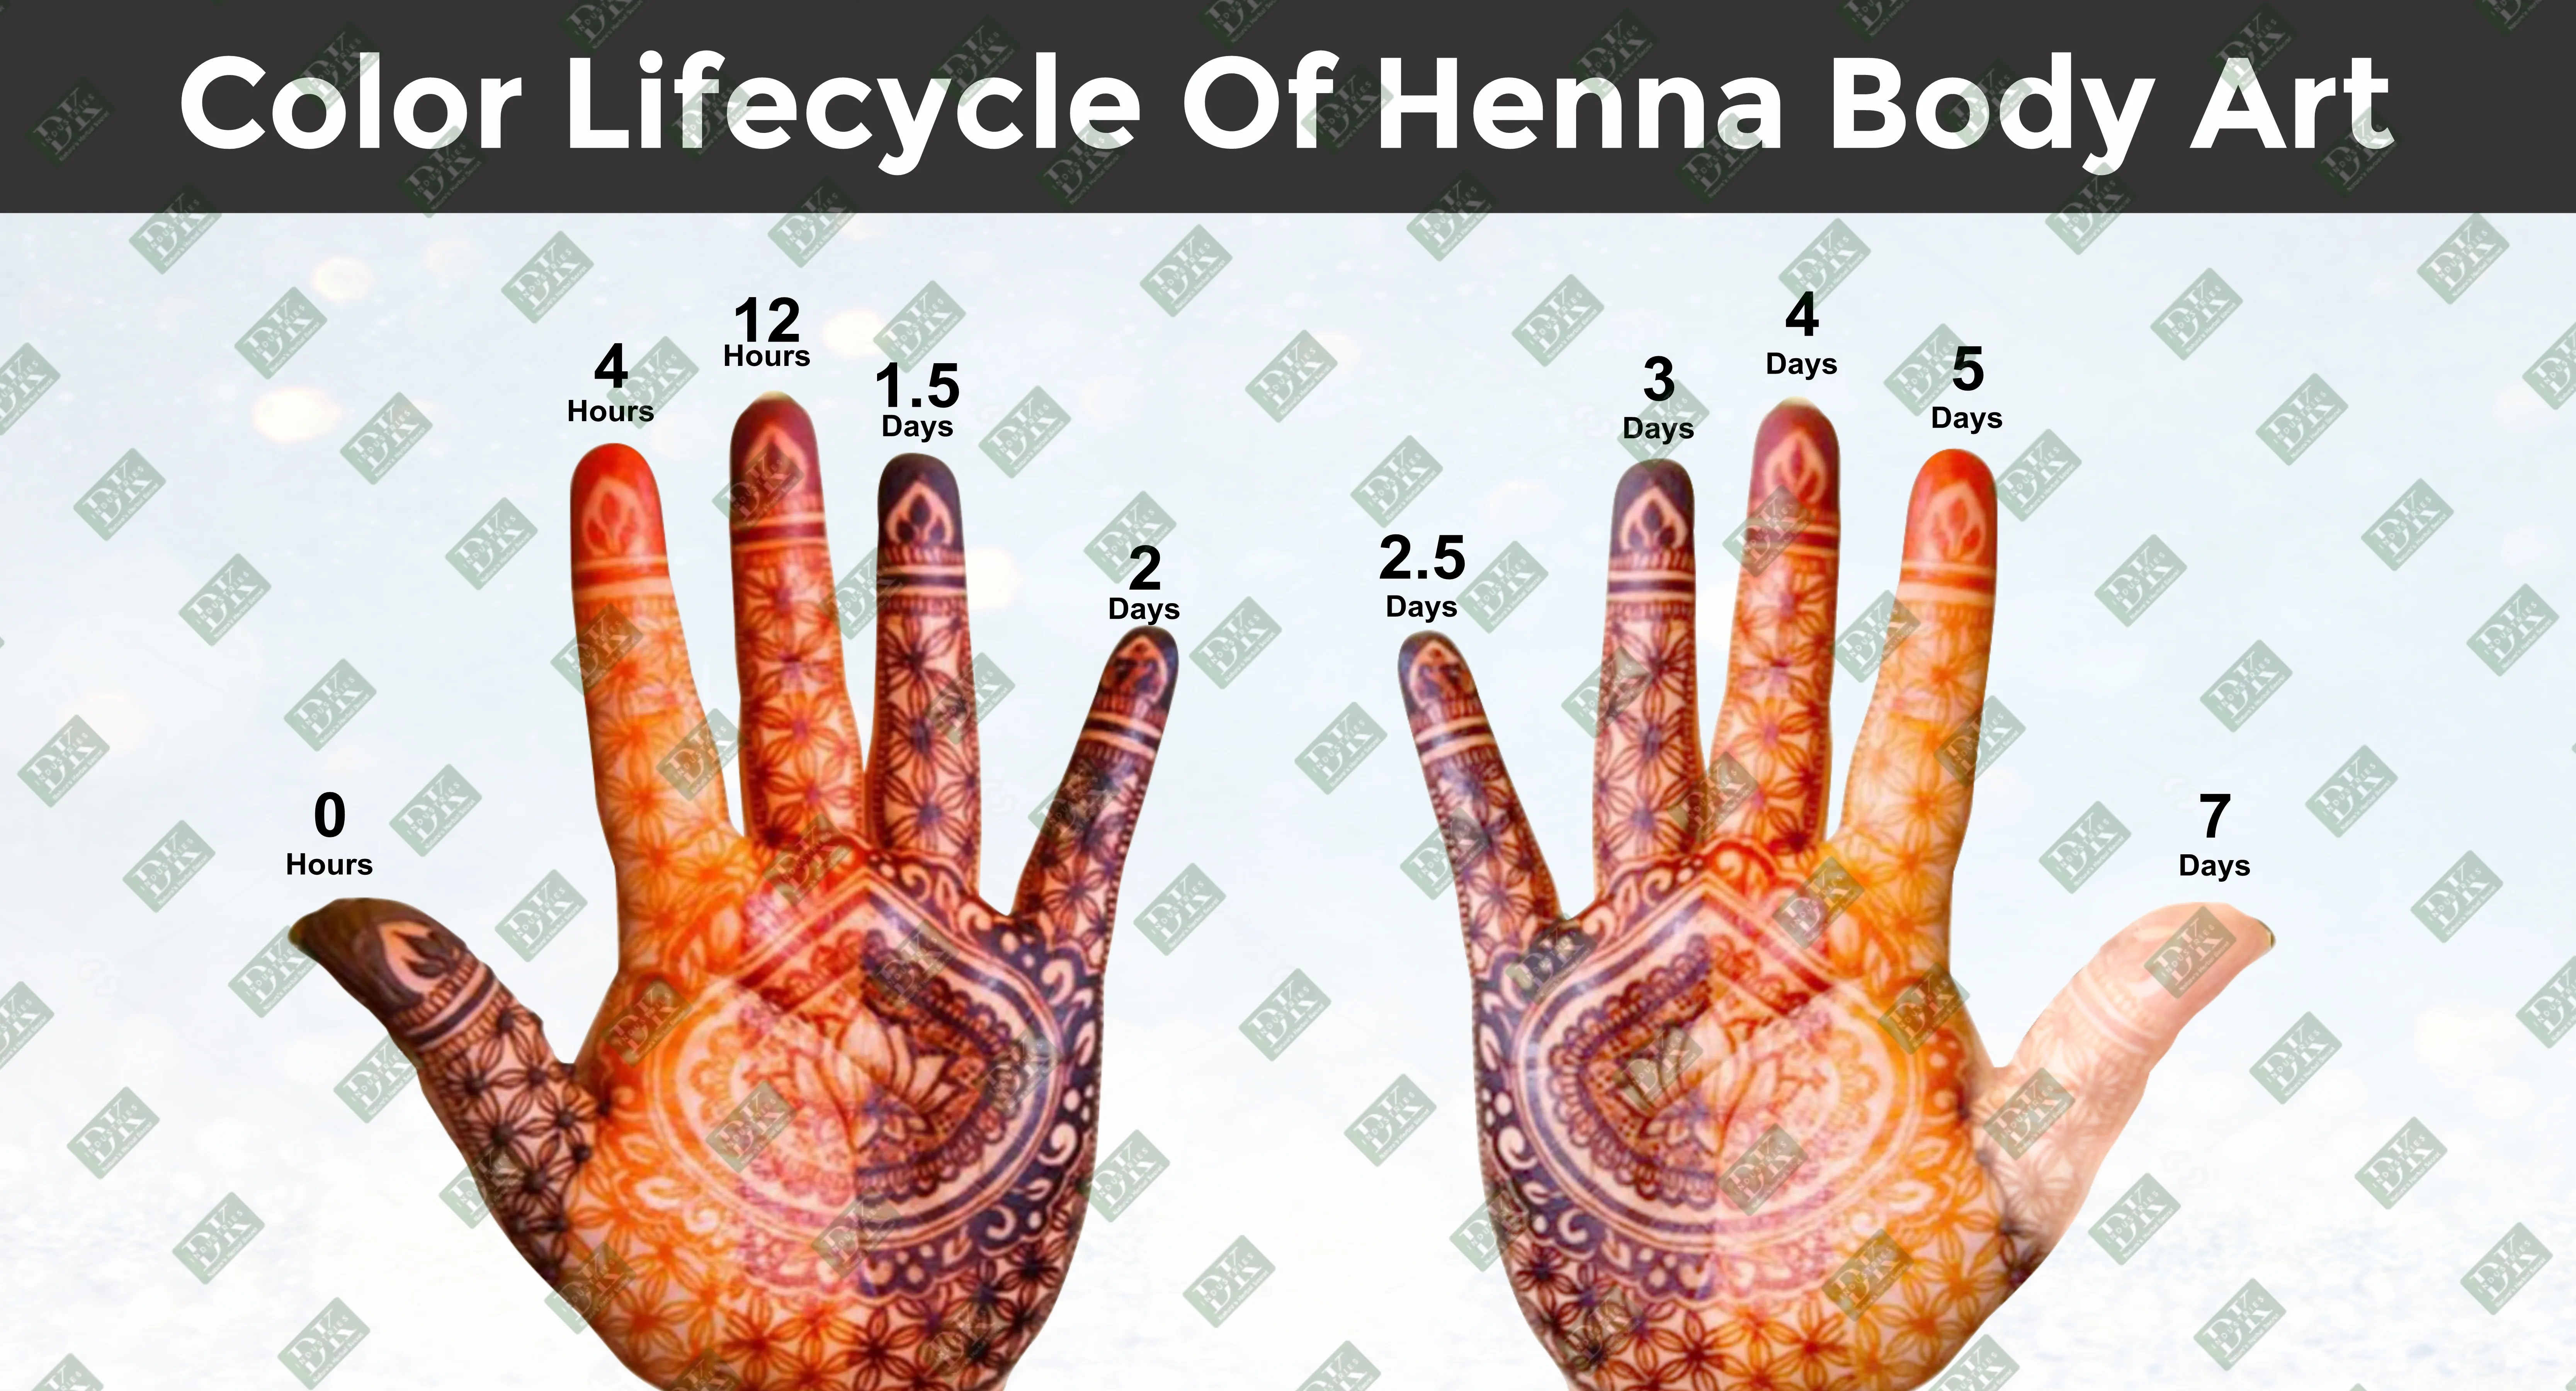 henna body art quality - www.dkihenna.com